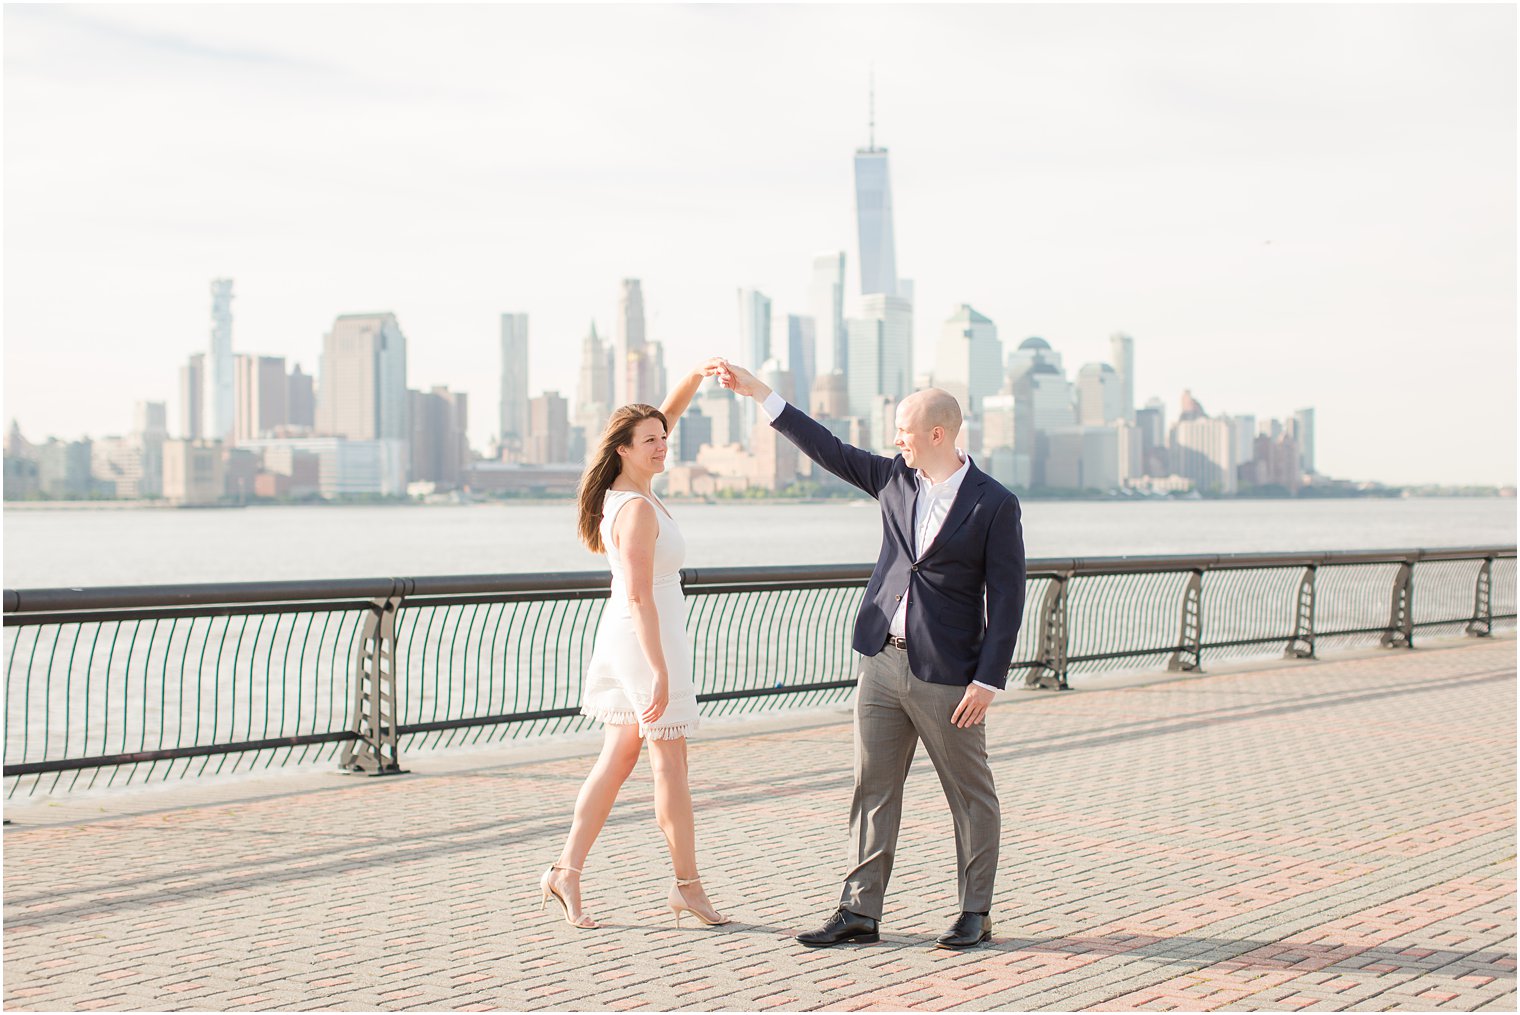 Hoboken Engagement Session by NJ Wedding Photographers Idalia Photography